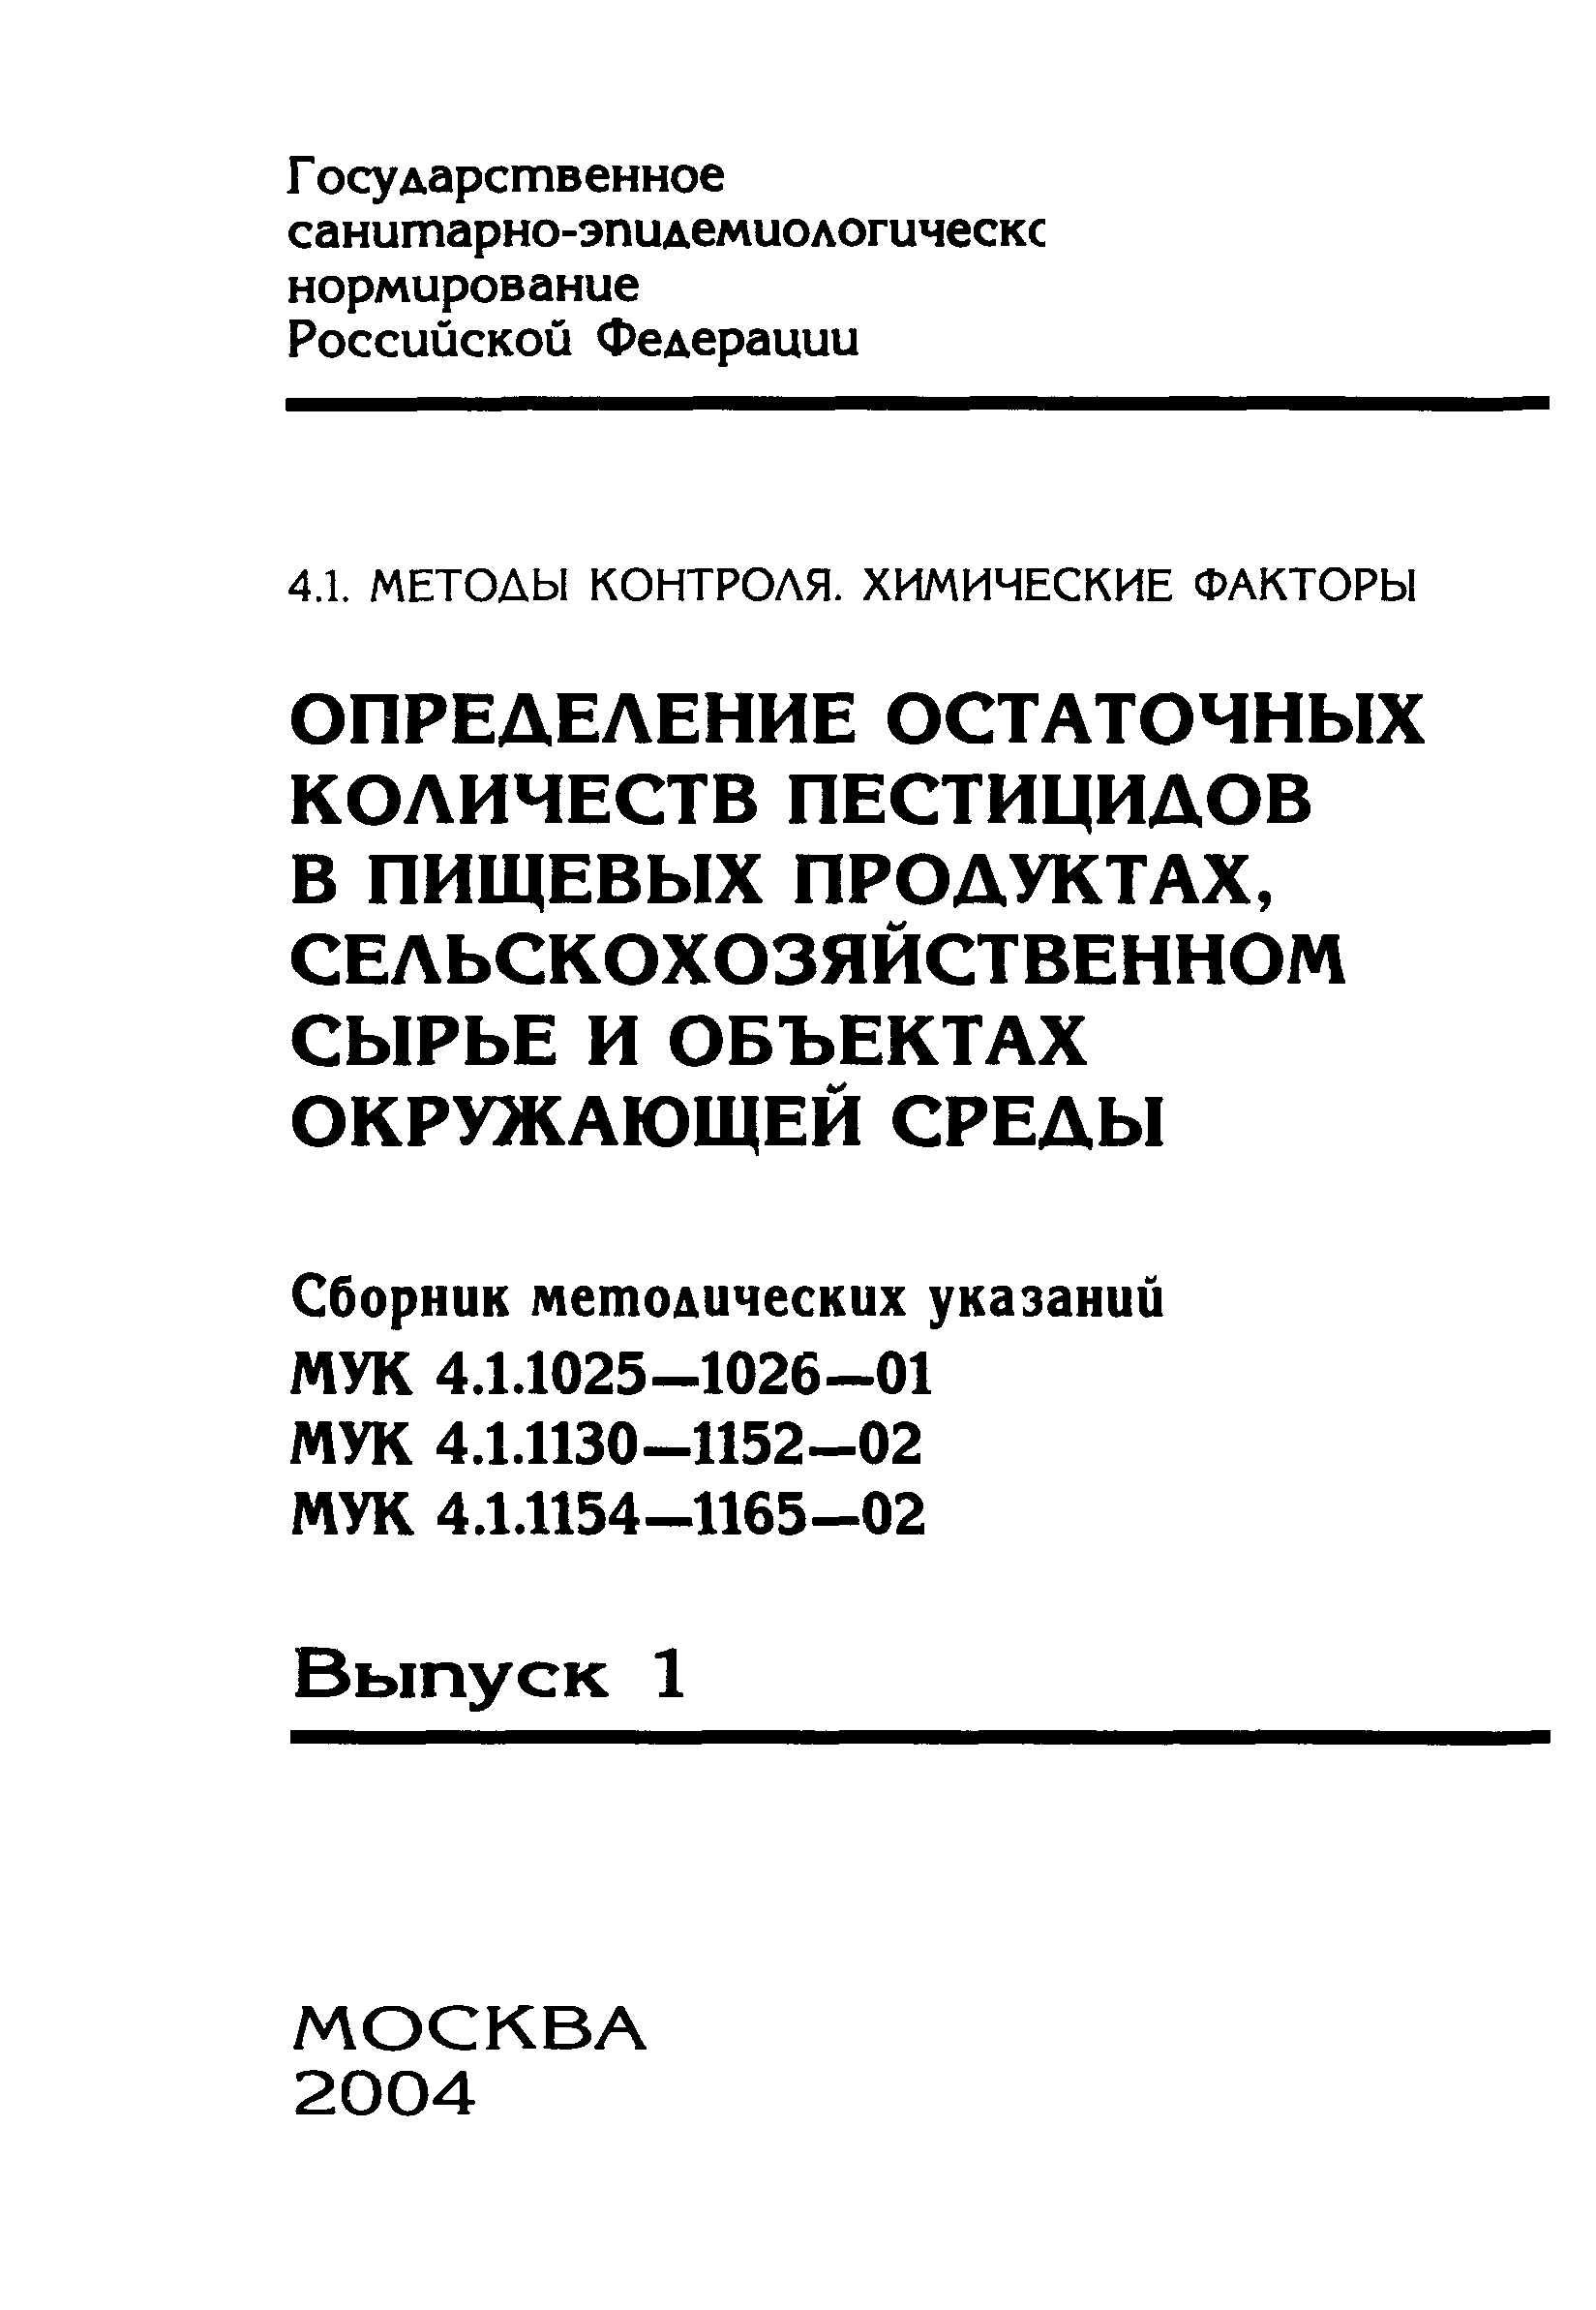 МУК 4.1.1133-02